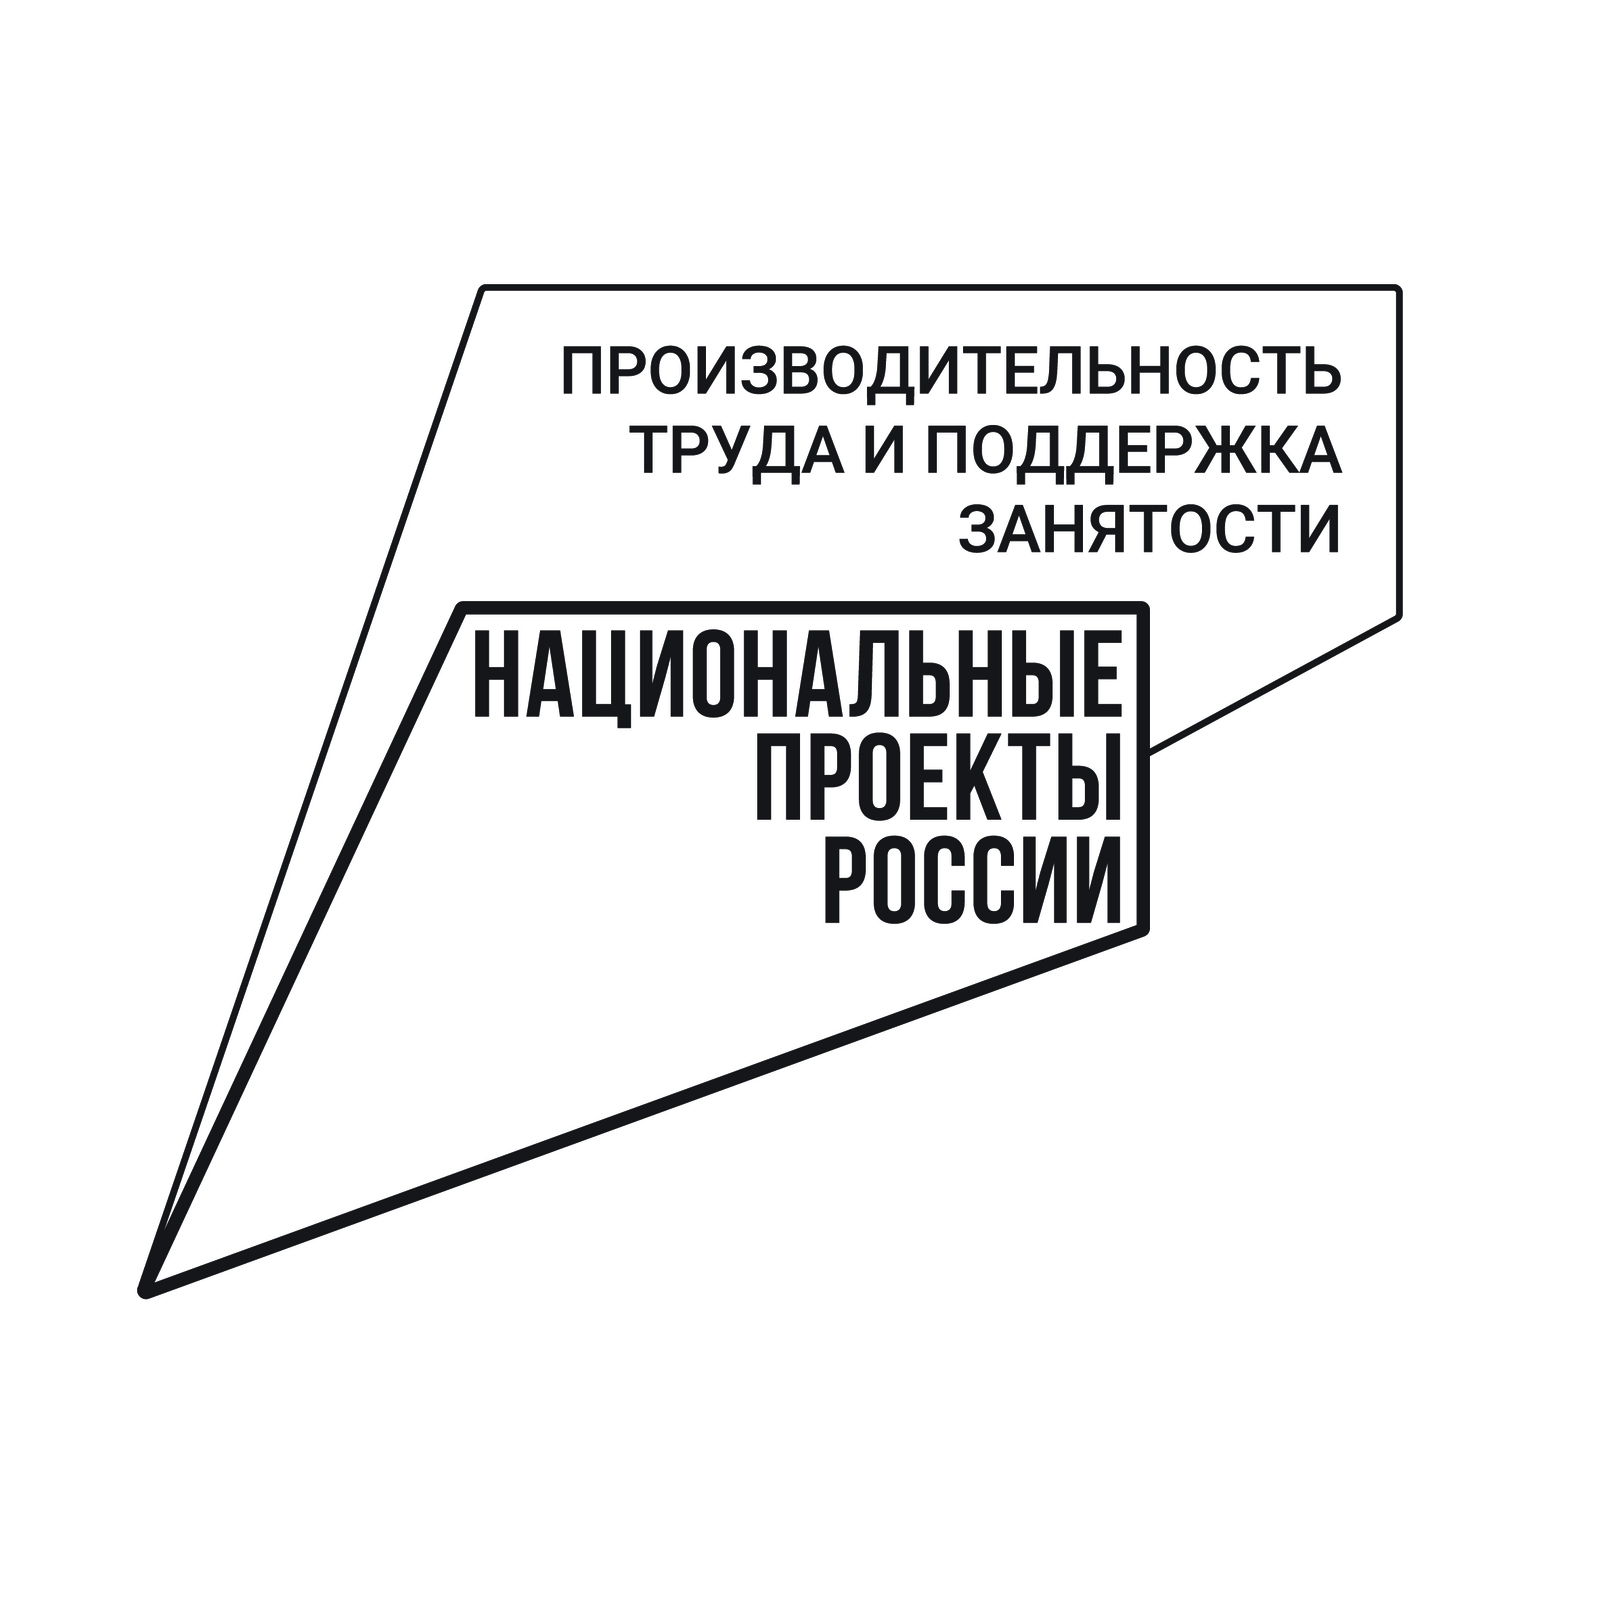 Башкортостан в лидерах рейтинга нацпроекта «Производительность труда»